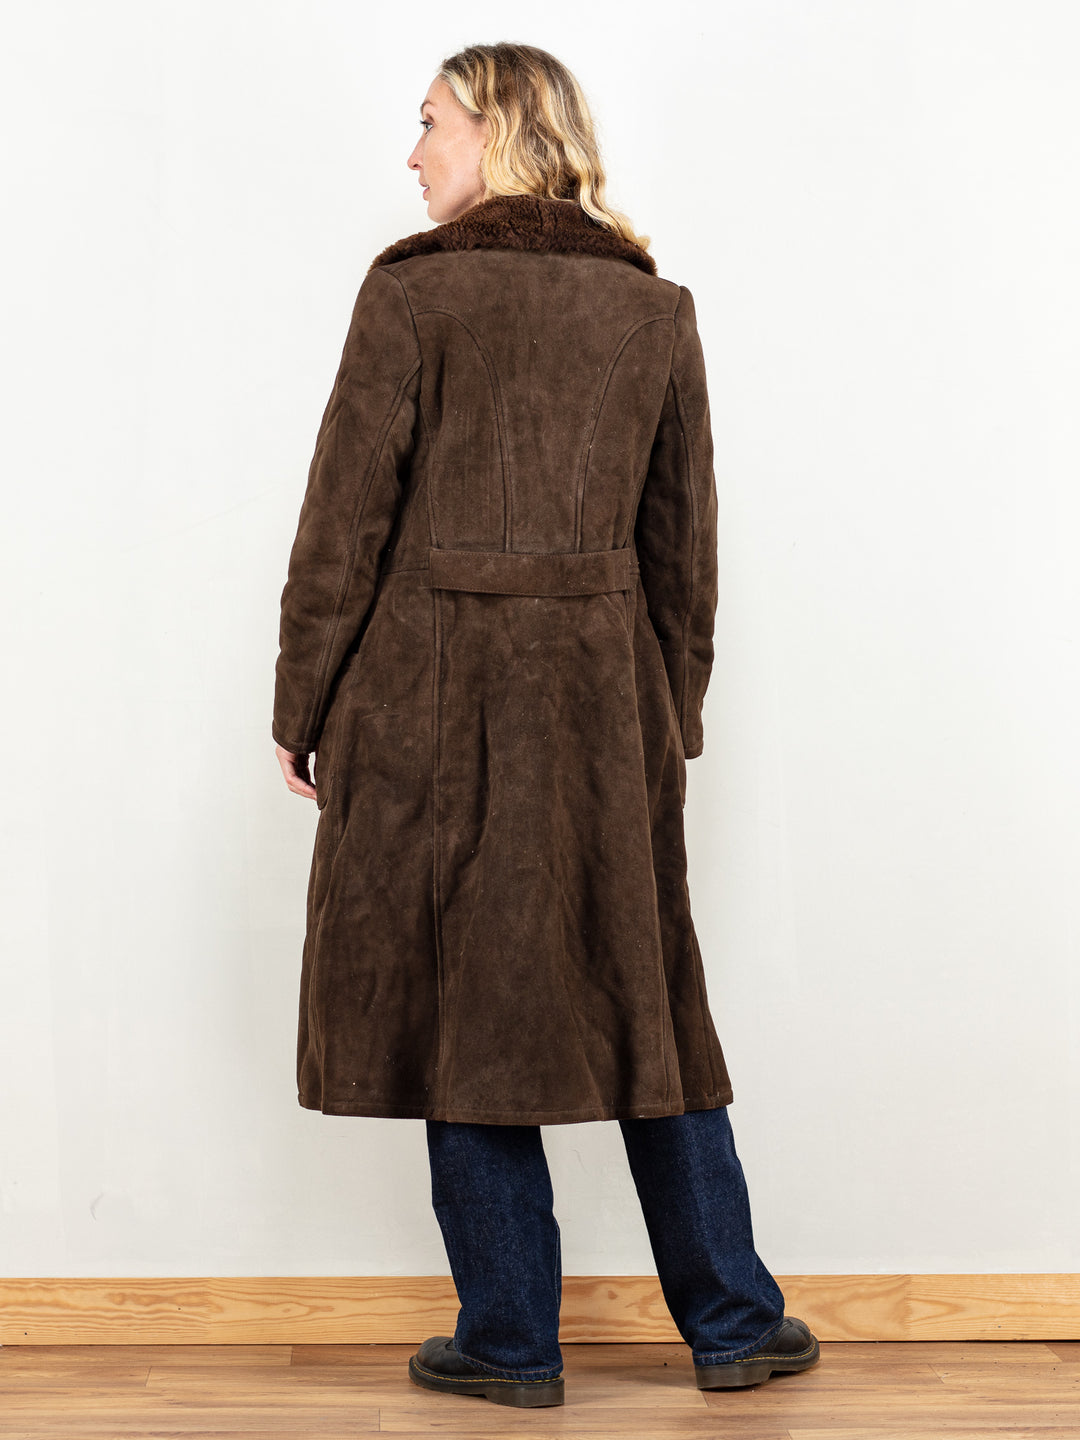 Penny Lane Coat vintage 70's brown sheepskin a-line coat almost famous movie warm winter sheepskin shearling women back-belt size medium